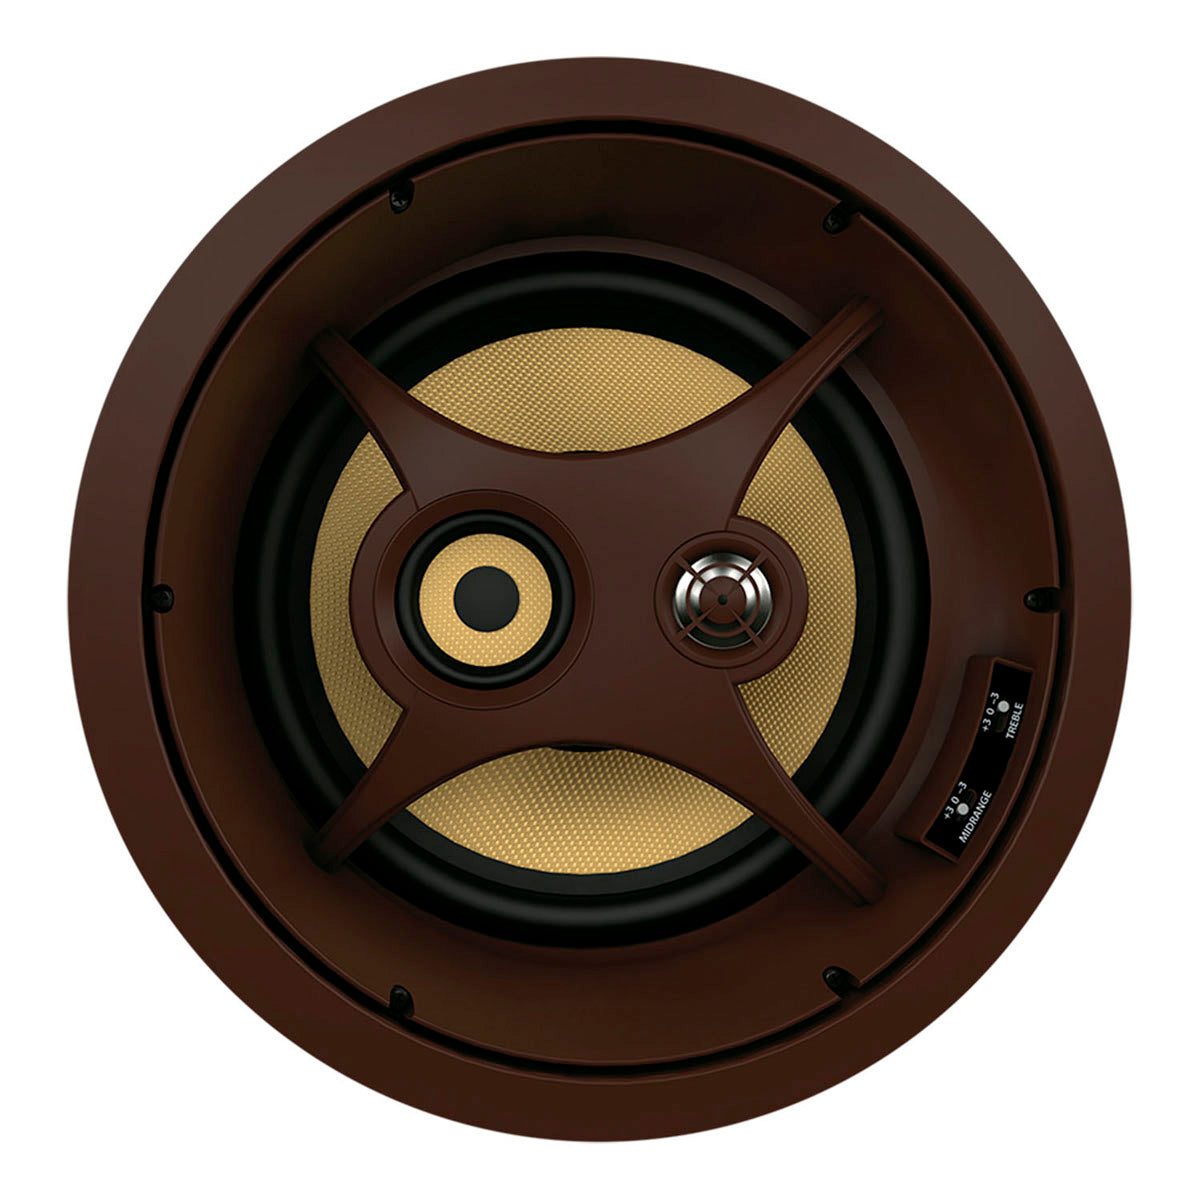 Proficient Audio Signature Series C1075s 10" LCR Inceiling Speaker - piece